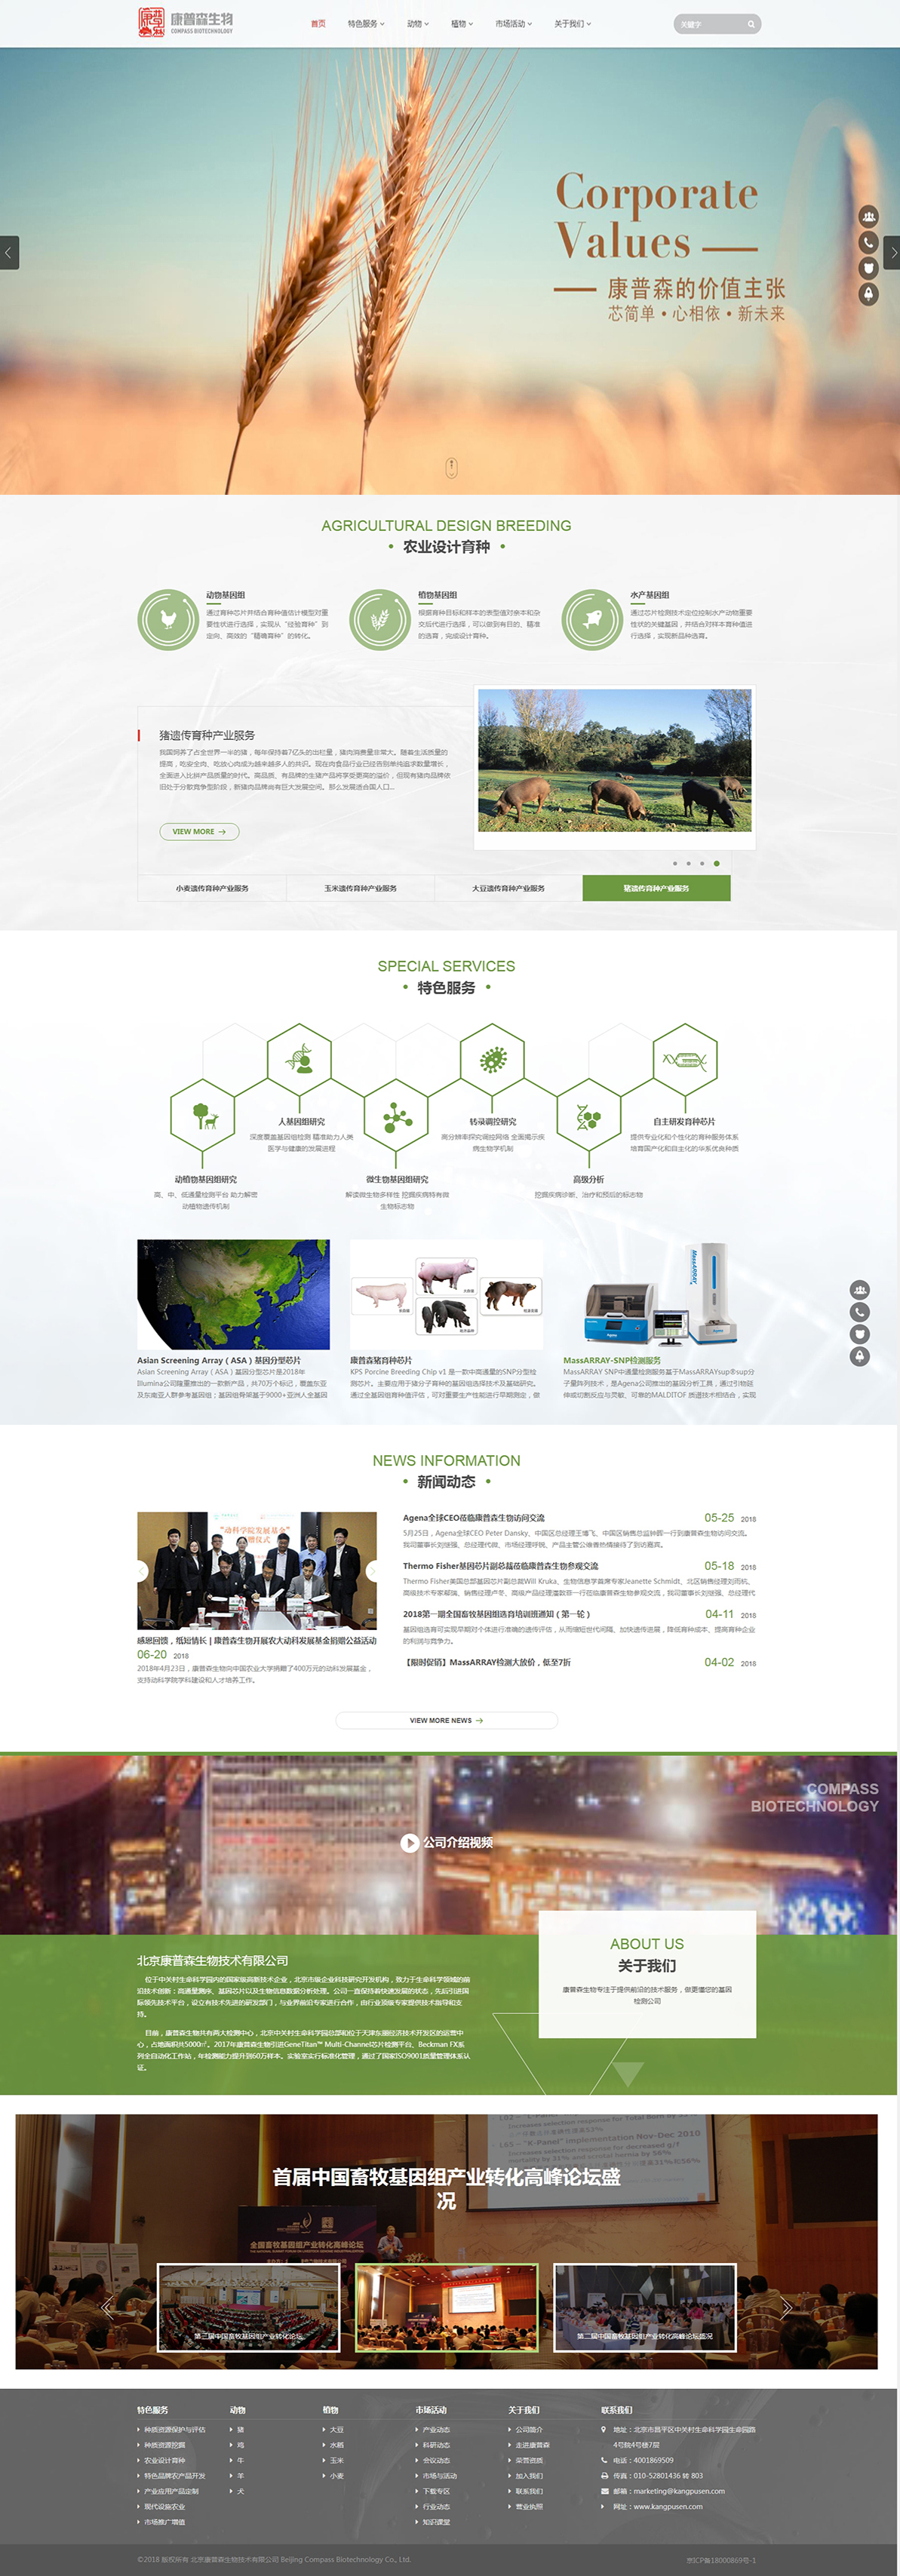 北京康普森生物技术有限公司网站设计案例